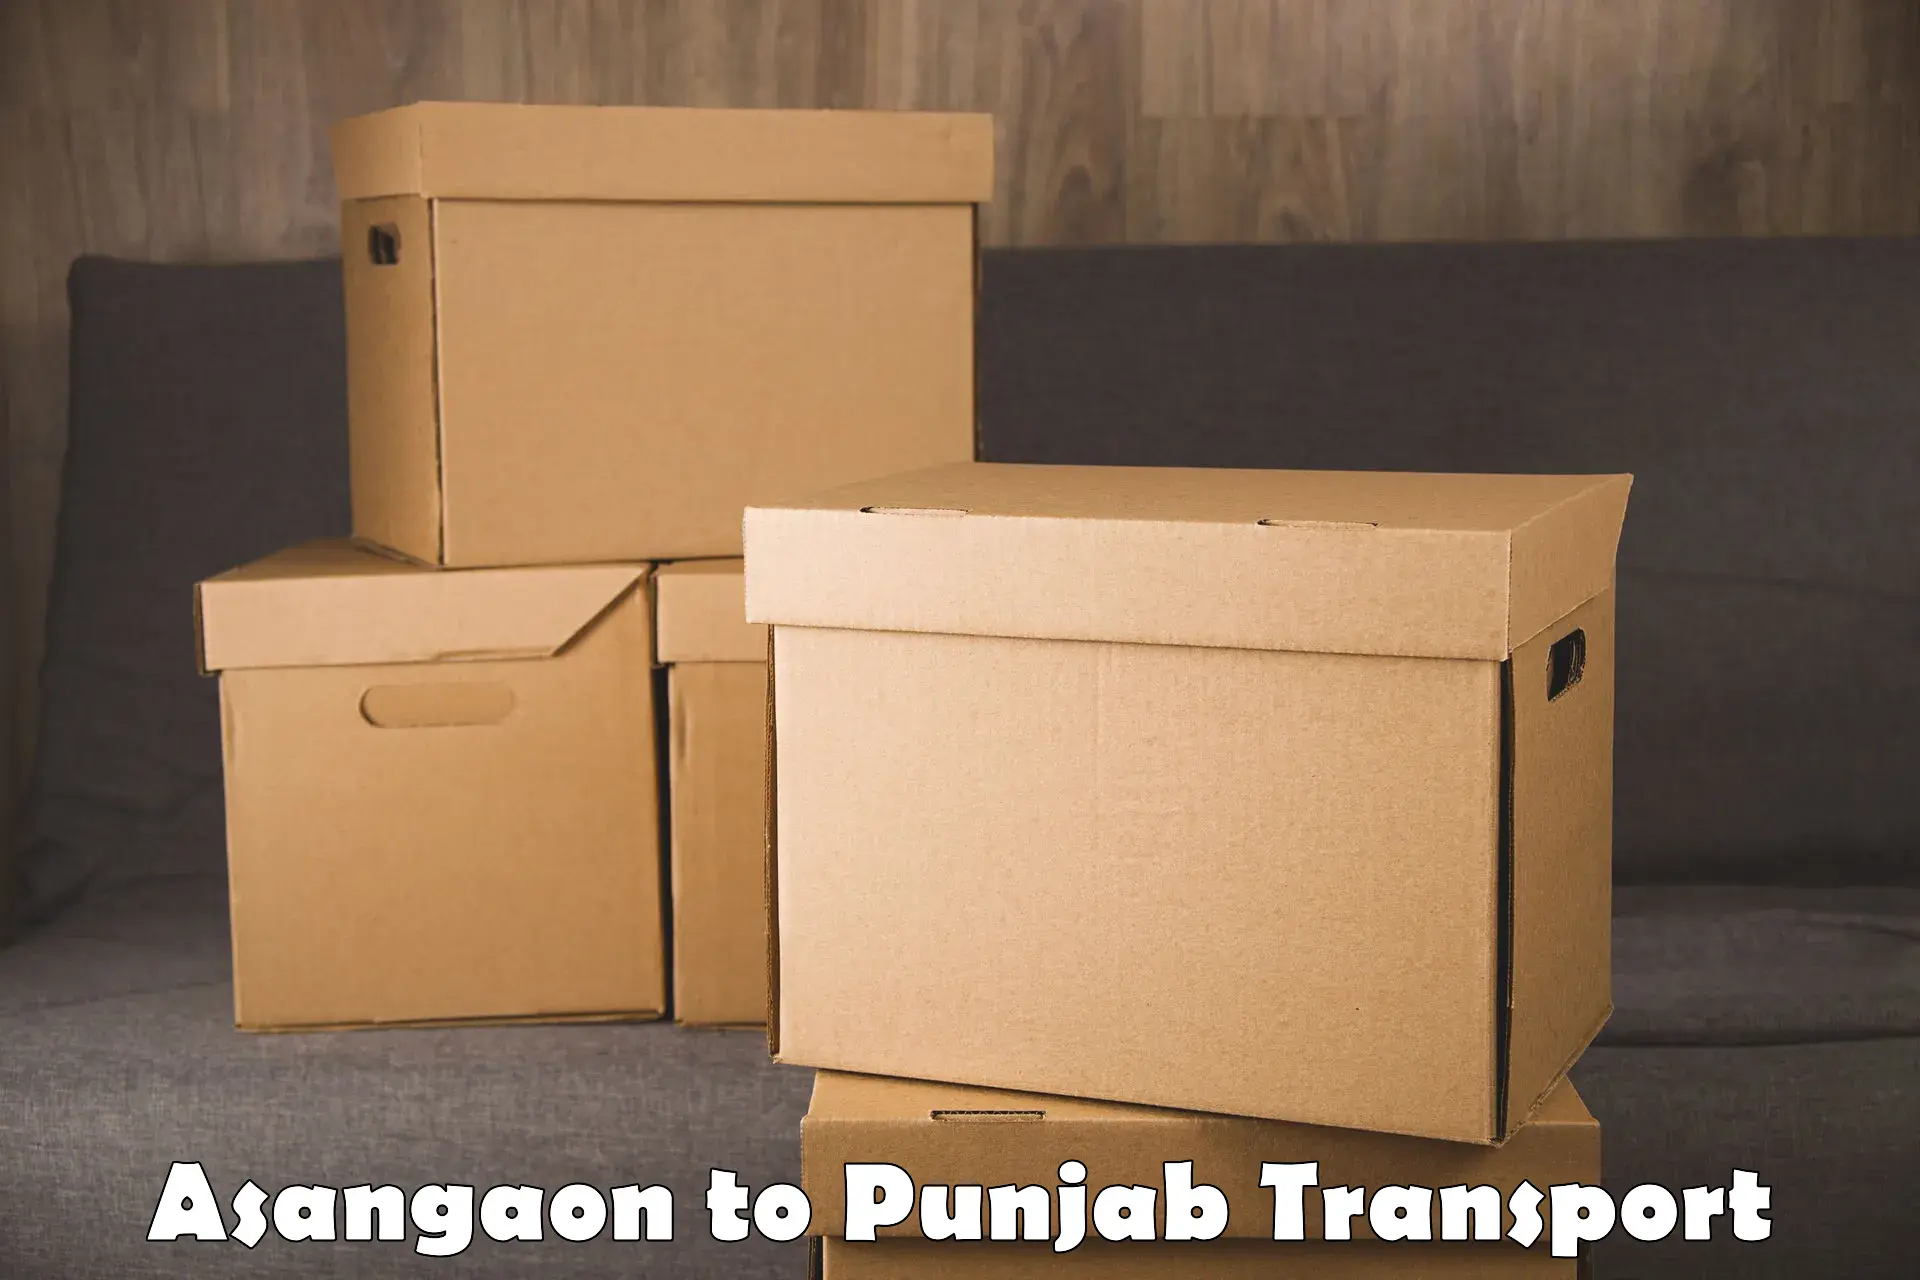 Furniture transport service Asangaon to Jalandhar